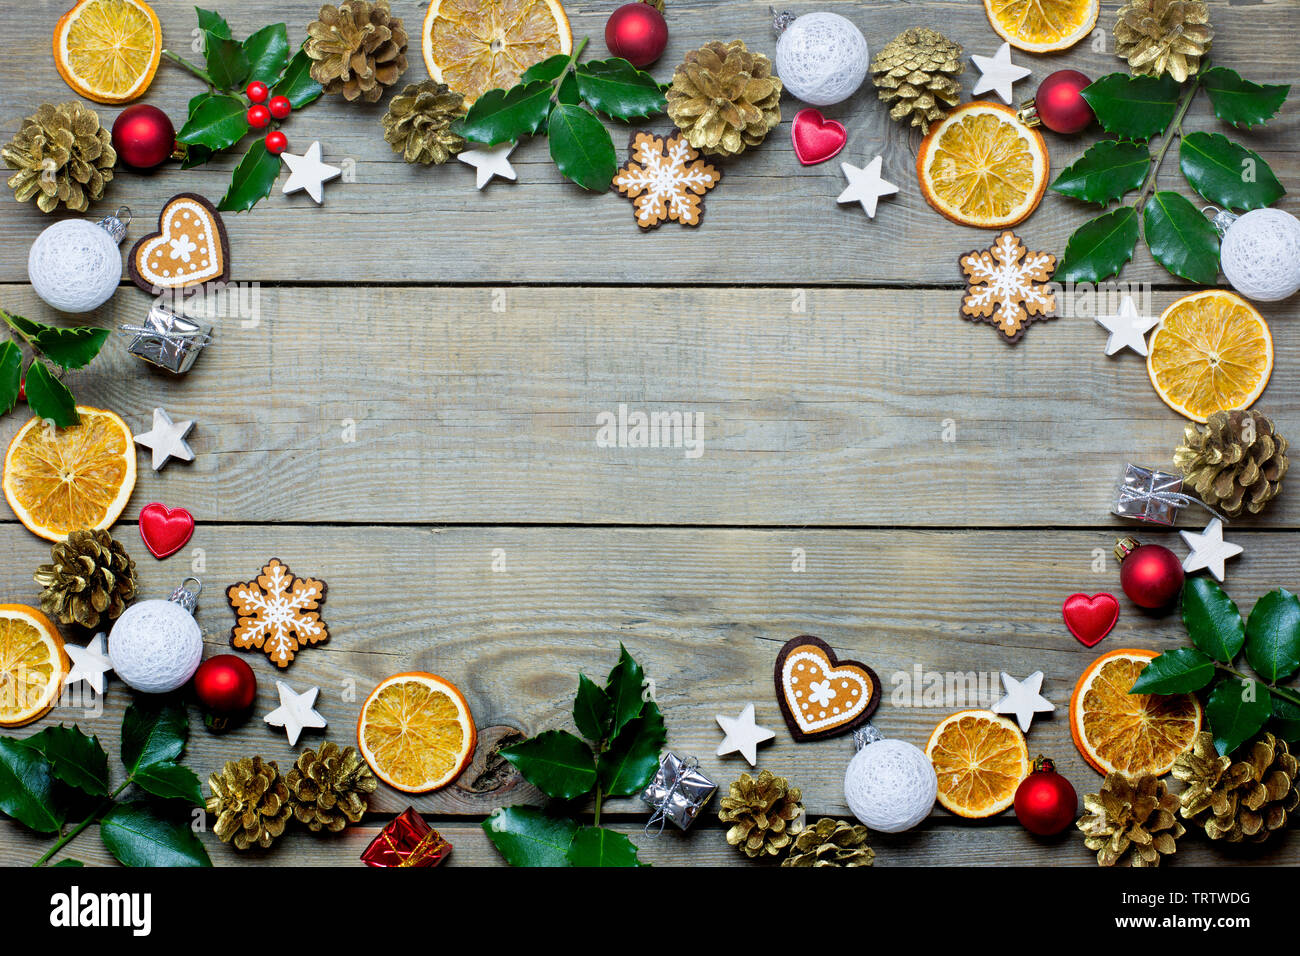 Weihnachten Zusammensetzung mit Orangenscheiben, Kegel, heiligen, Sterne, kleine Geschenkboxen, rote und weiße Kugeln, Herz und Lebkuchen auf hölzernen Hintergrund Stockfoto